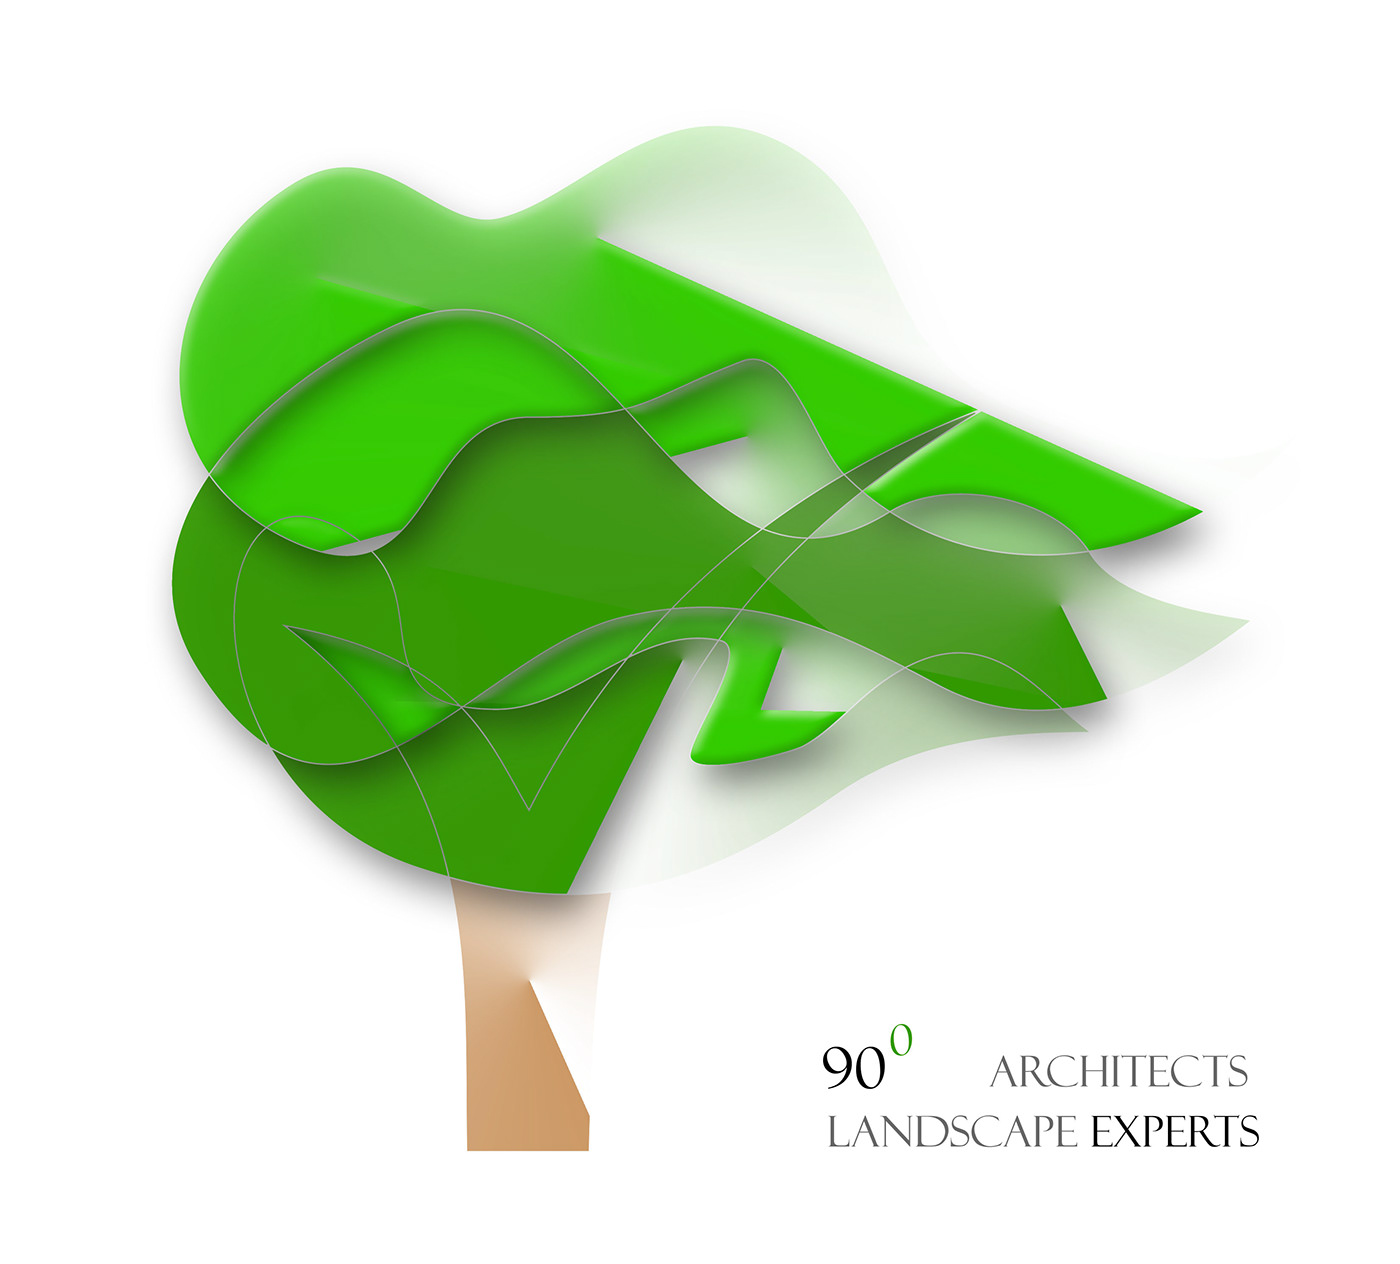 landscape designs landscape logos architects logos sidwalks landscape logos sidwalks architects logos